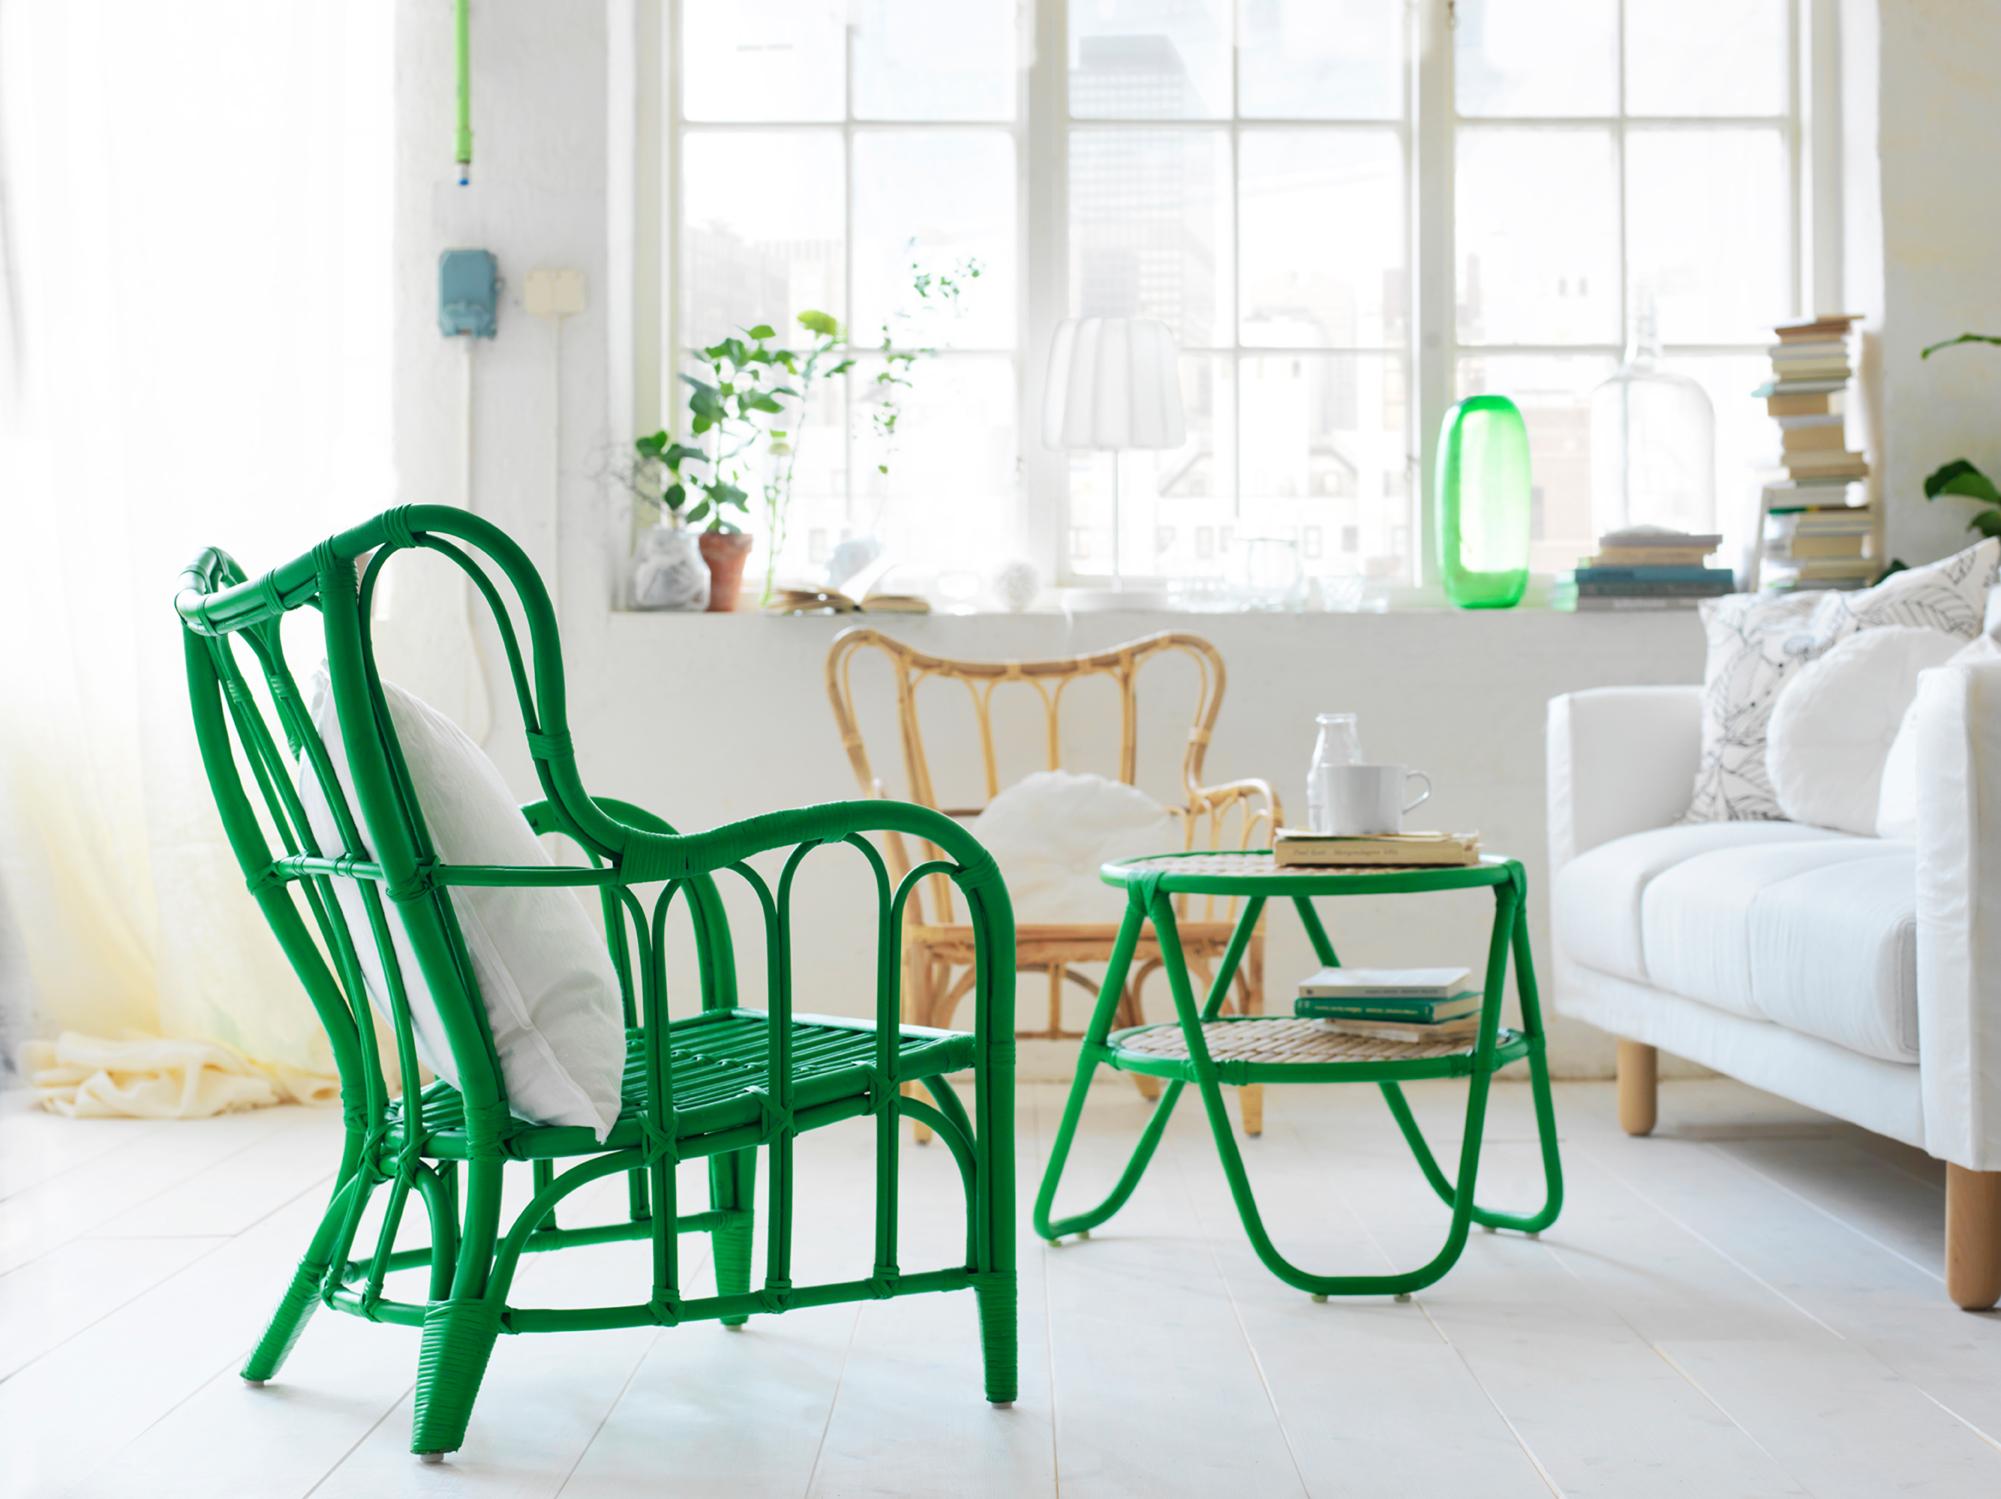 Rattansessel in Grün #wohnzimmer #sessel #ikea #sofa #grünerbeistelltisch #rattanmöbel #rattansessel #zimmergestaltung ©Inter IKEA Systems B.V.